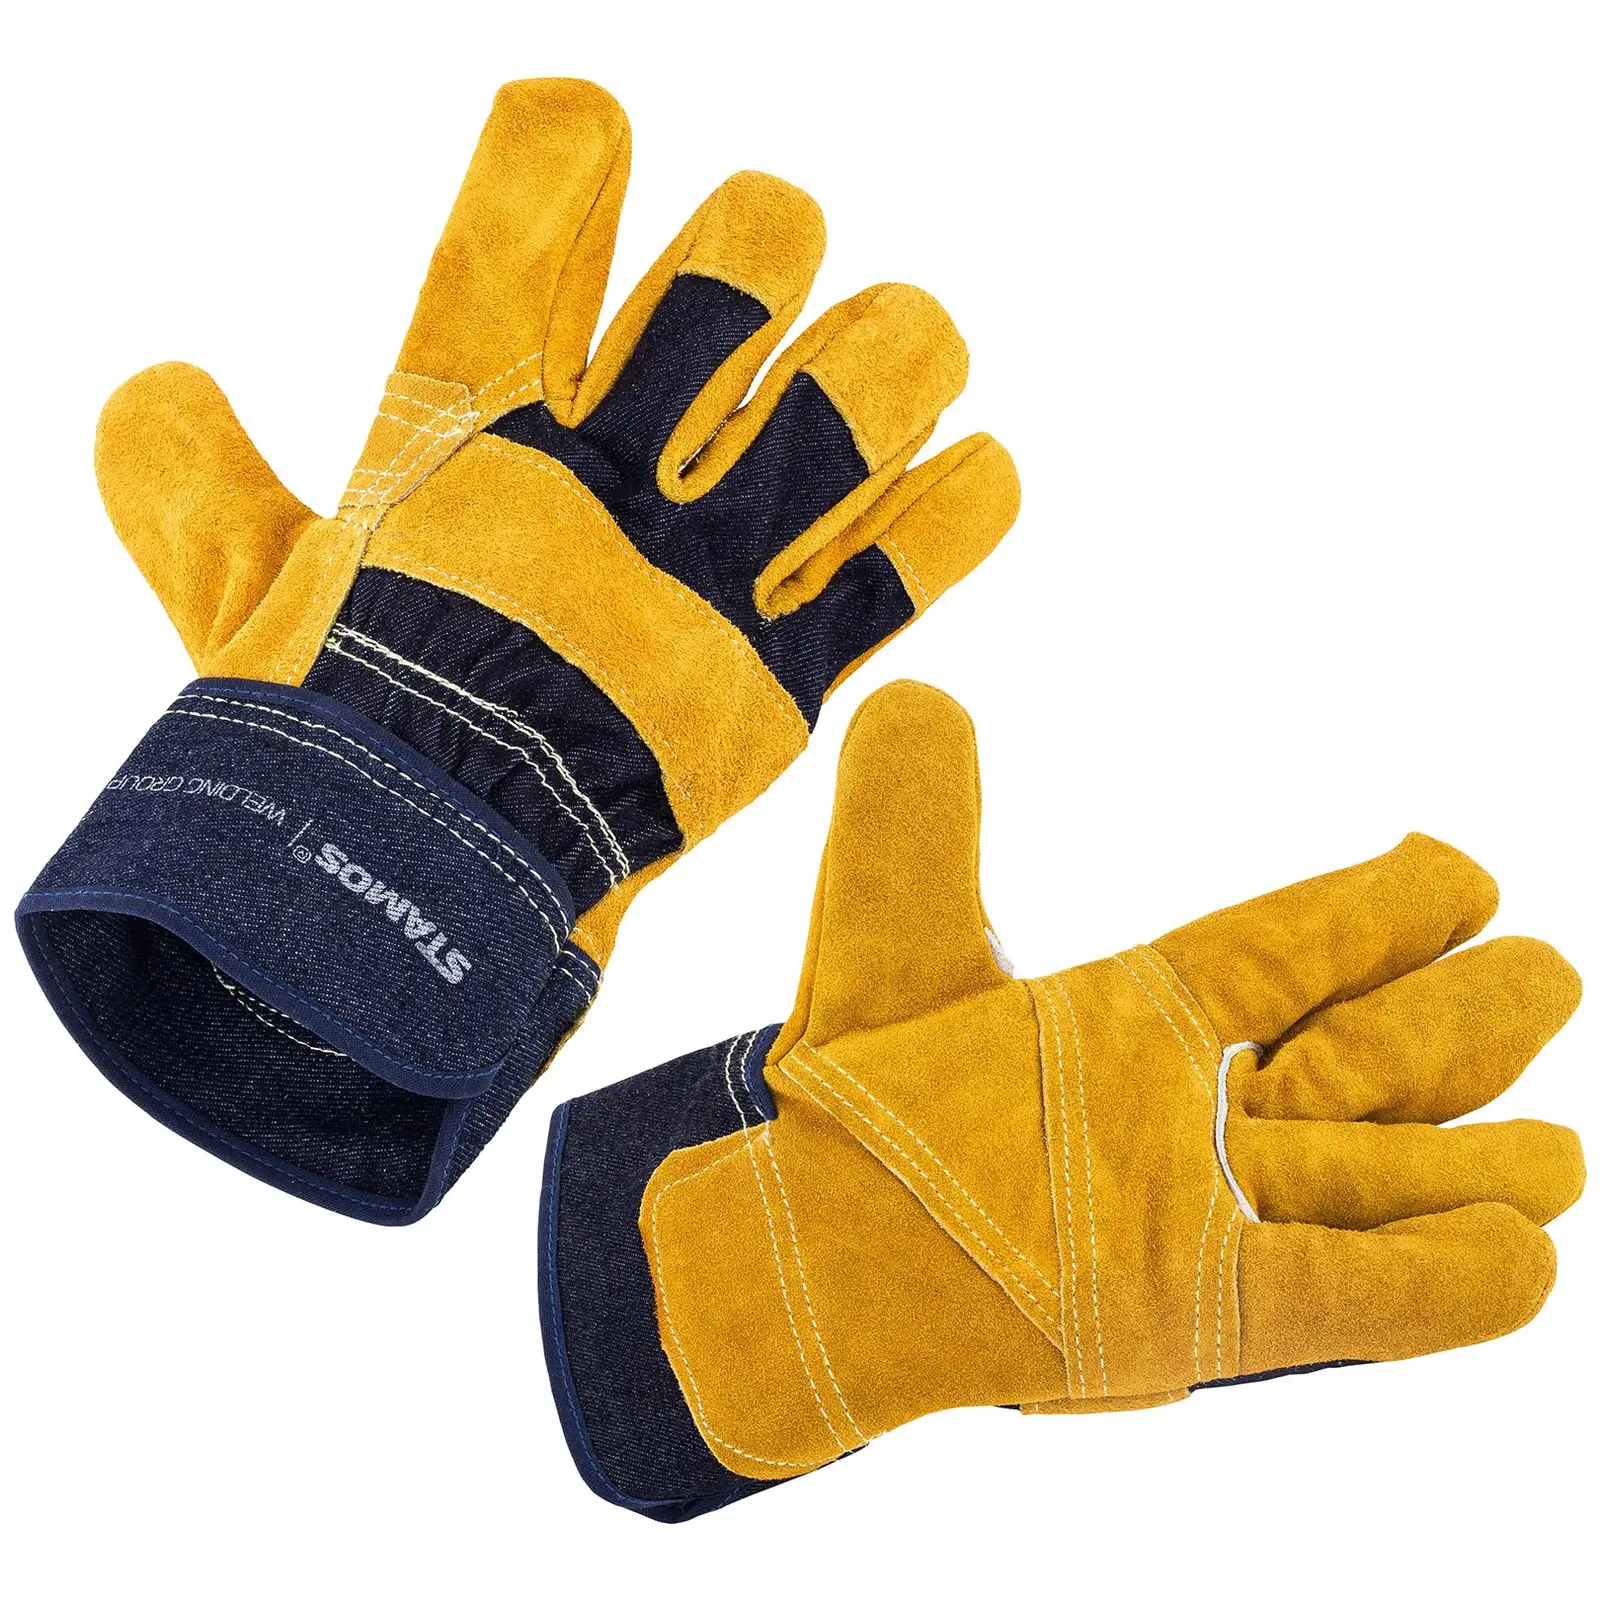 Demolition Hammer Set ABH-2100-SET - Work gloves - 2,100 W